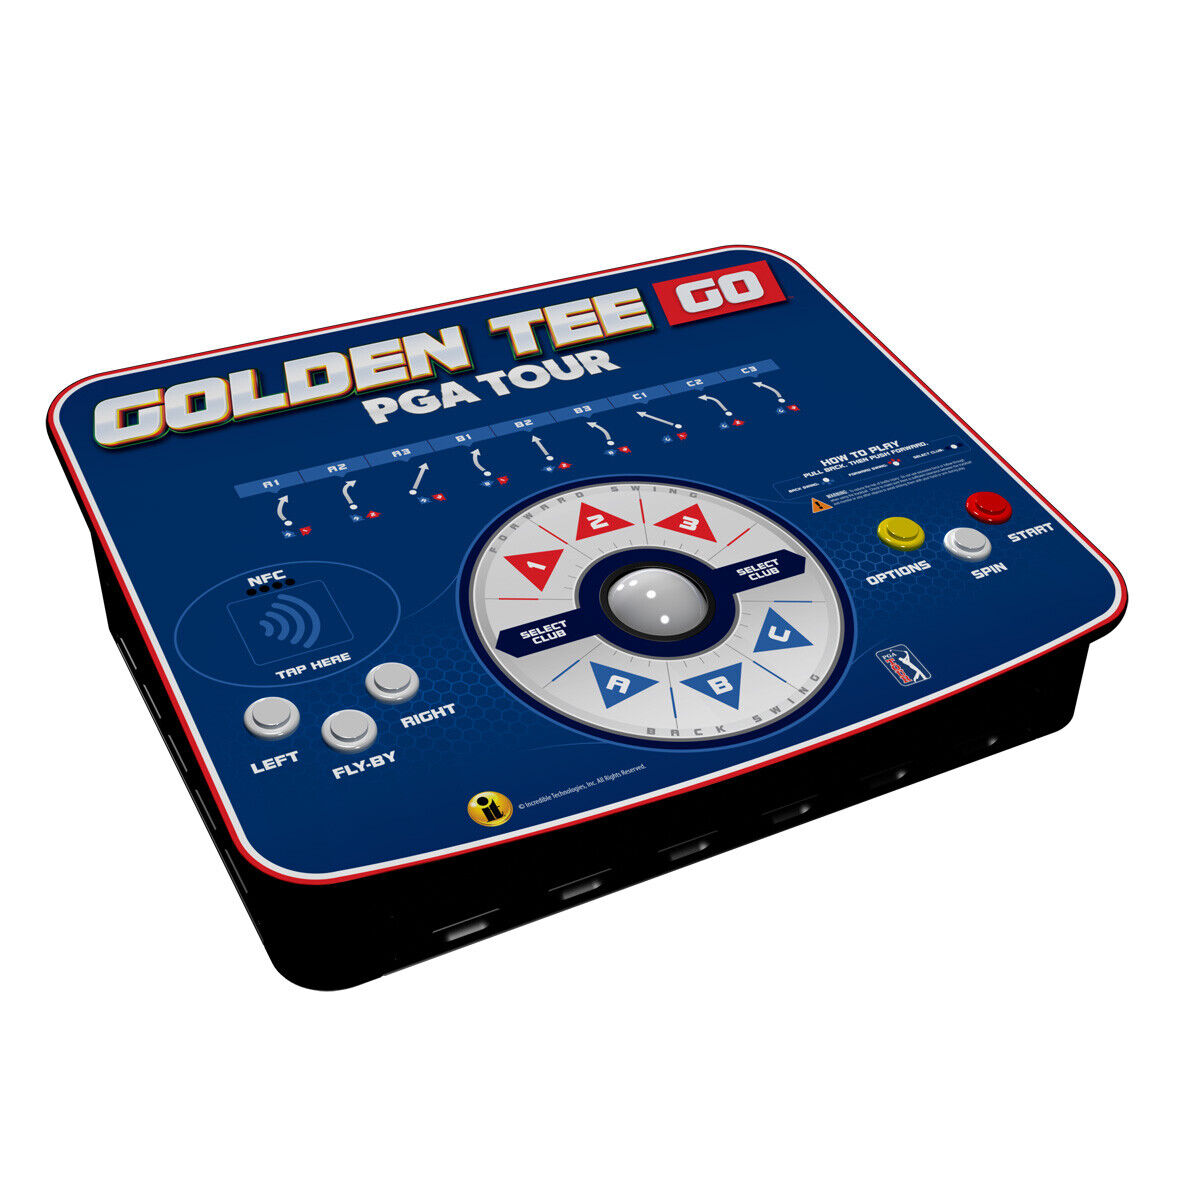 Golden Tee Go PGA Tour Portable Golf Game